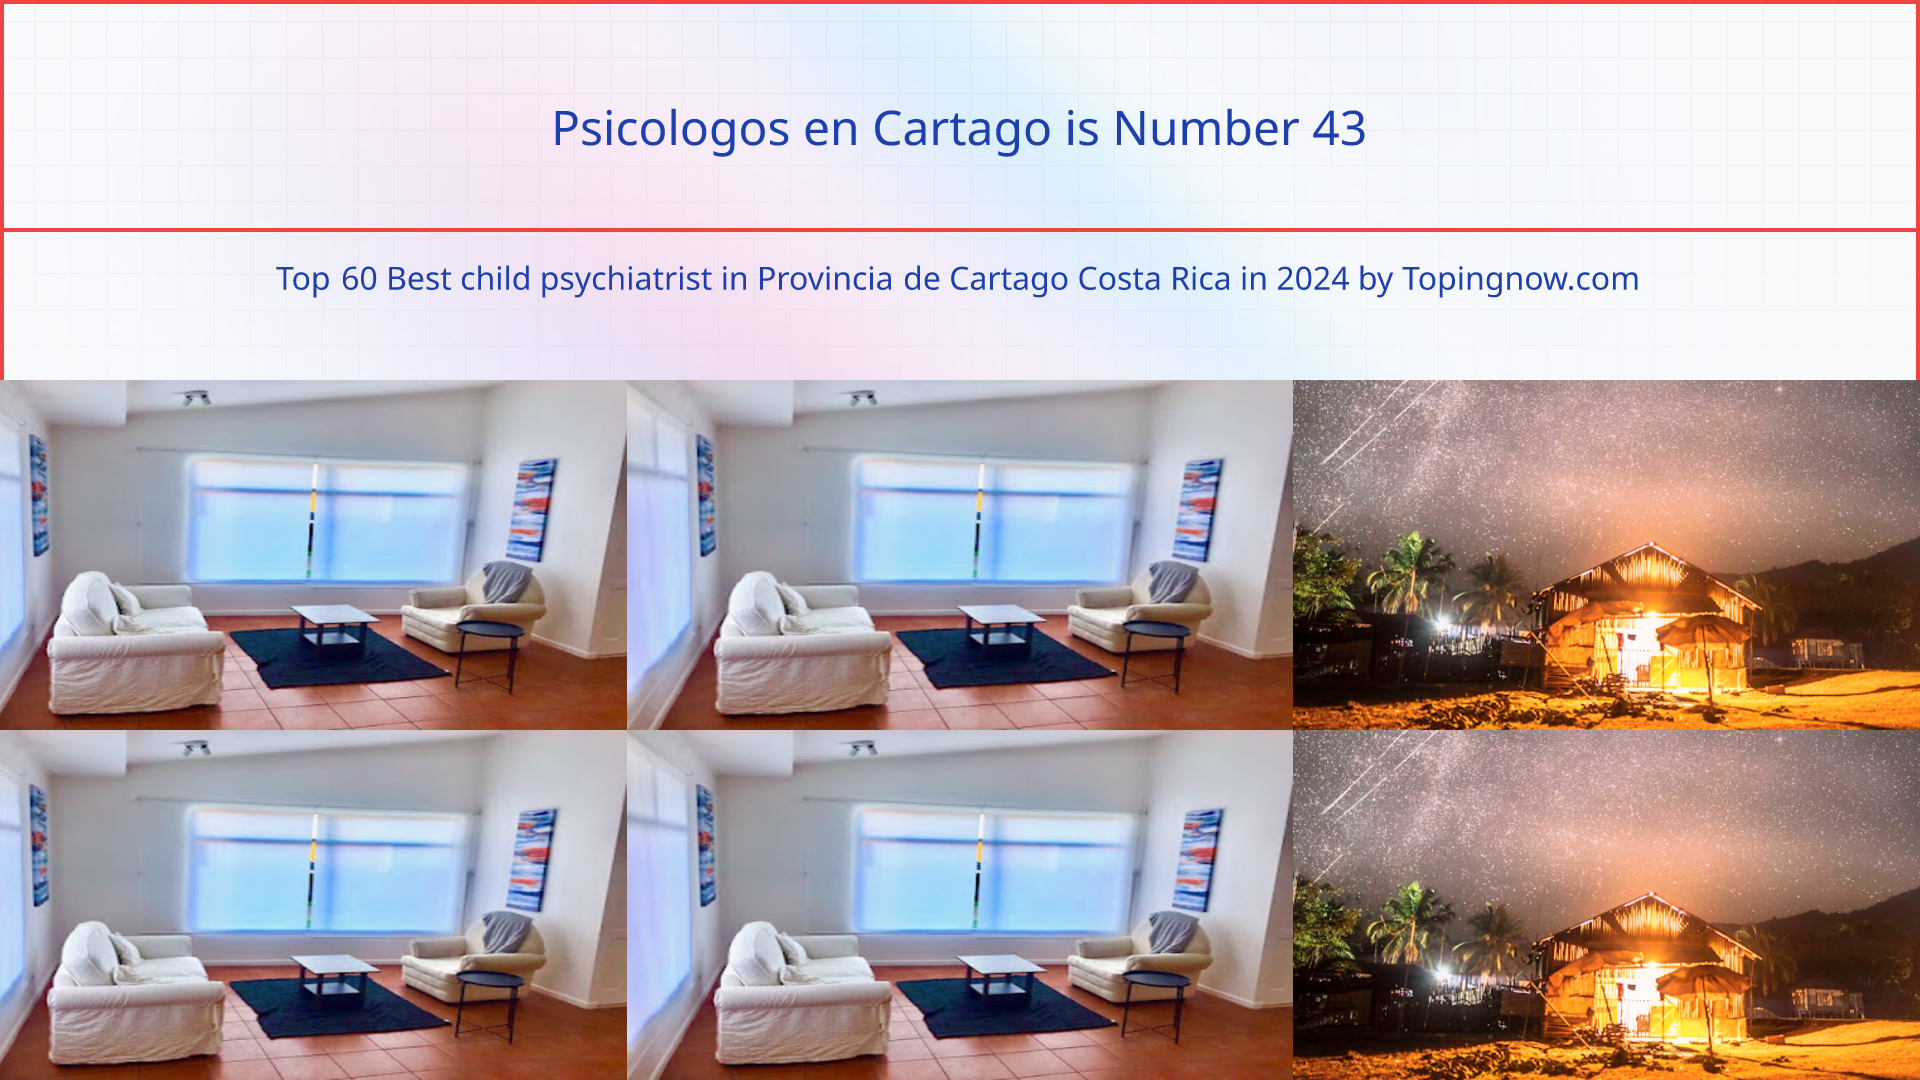 Psicologos en Cartago: Top 60 Best child psychiatrist in Provincia de Cartago Costa Rica in 2024